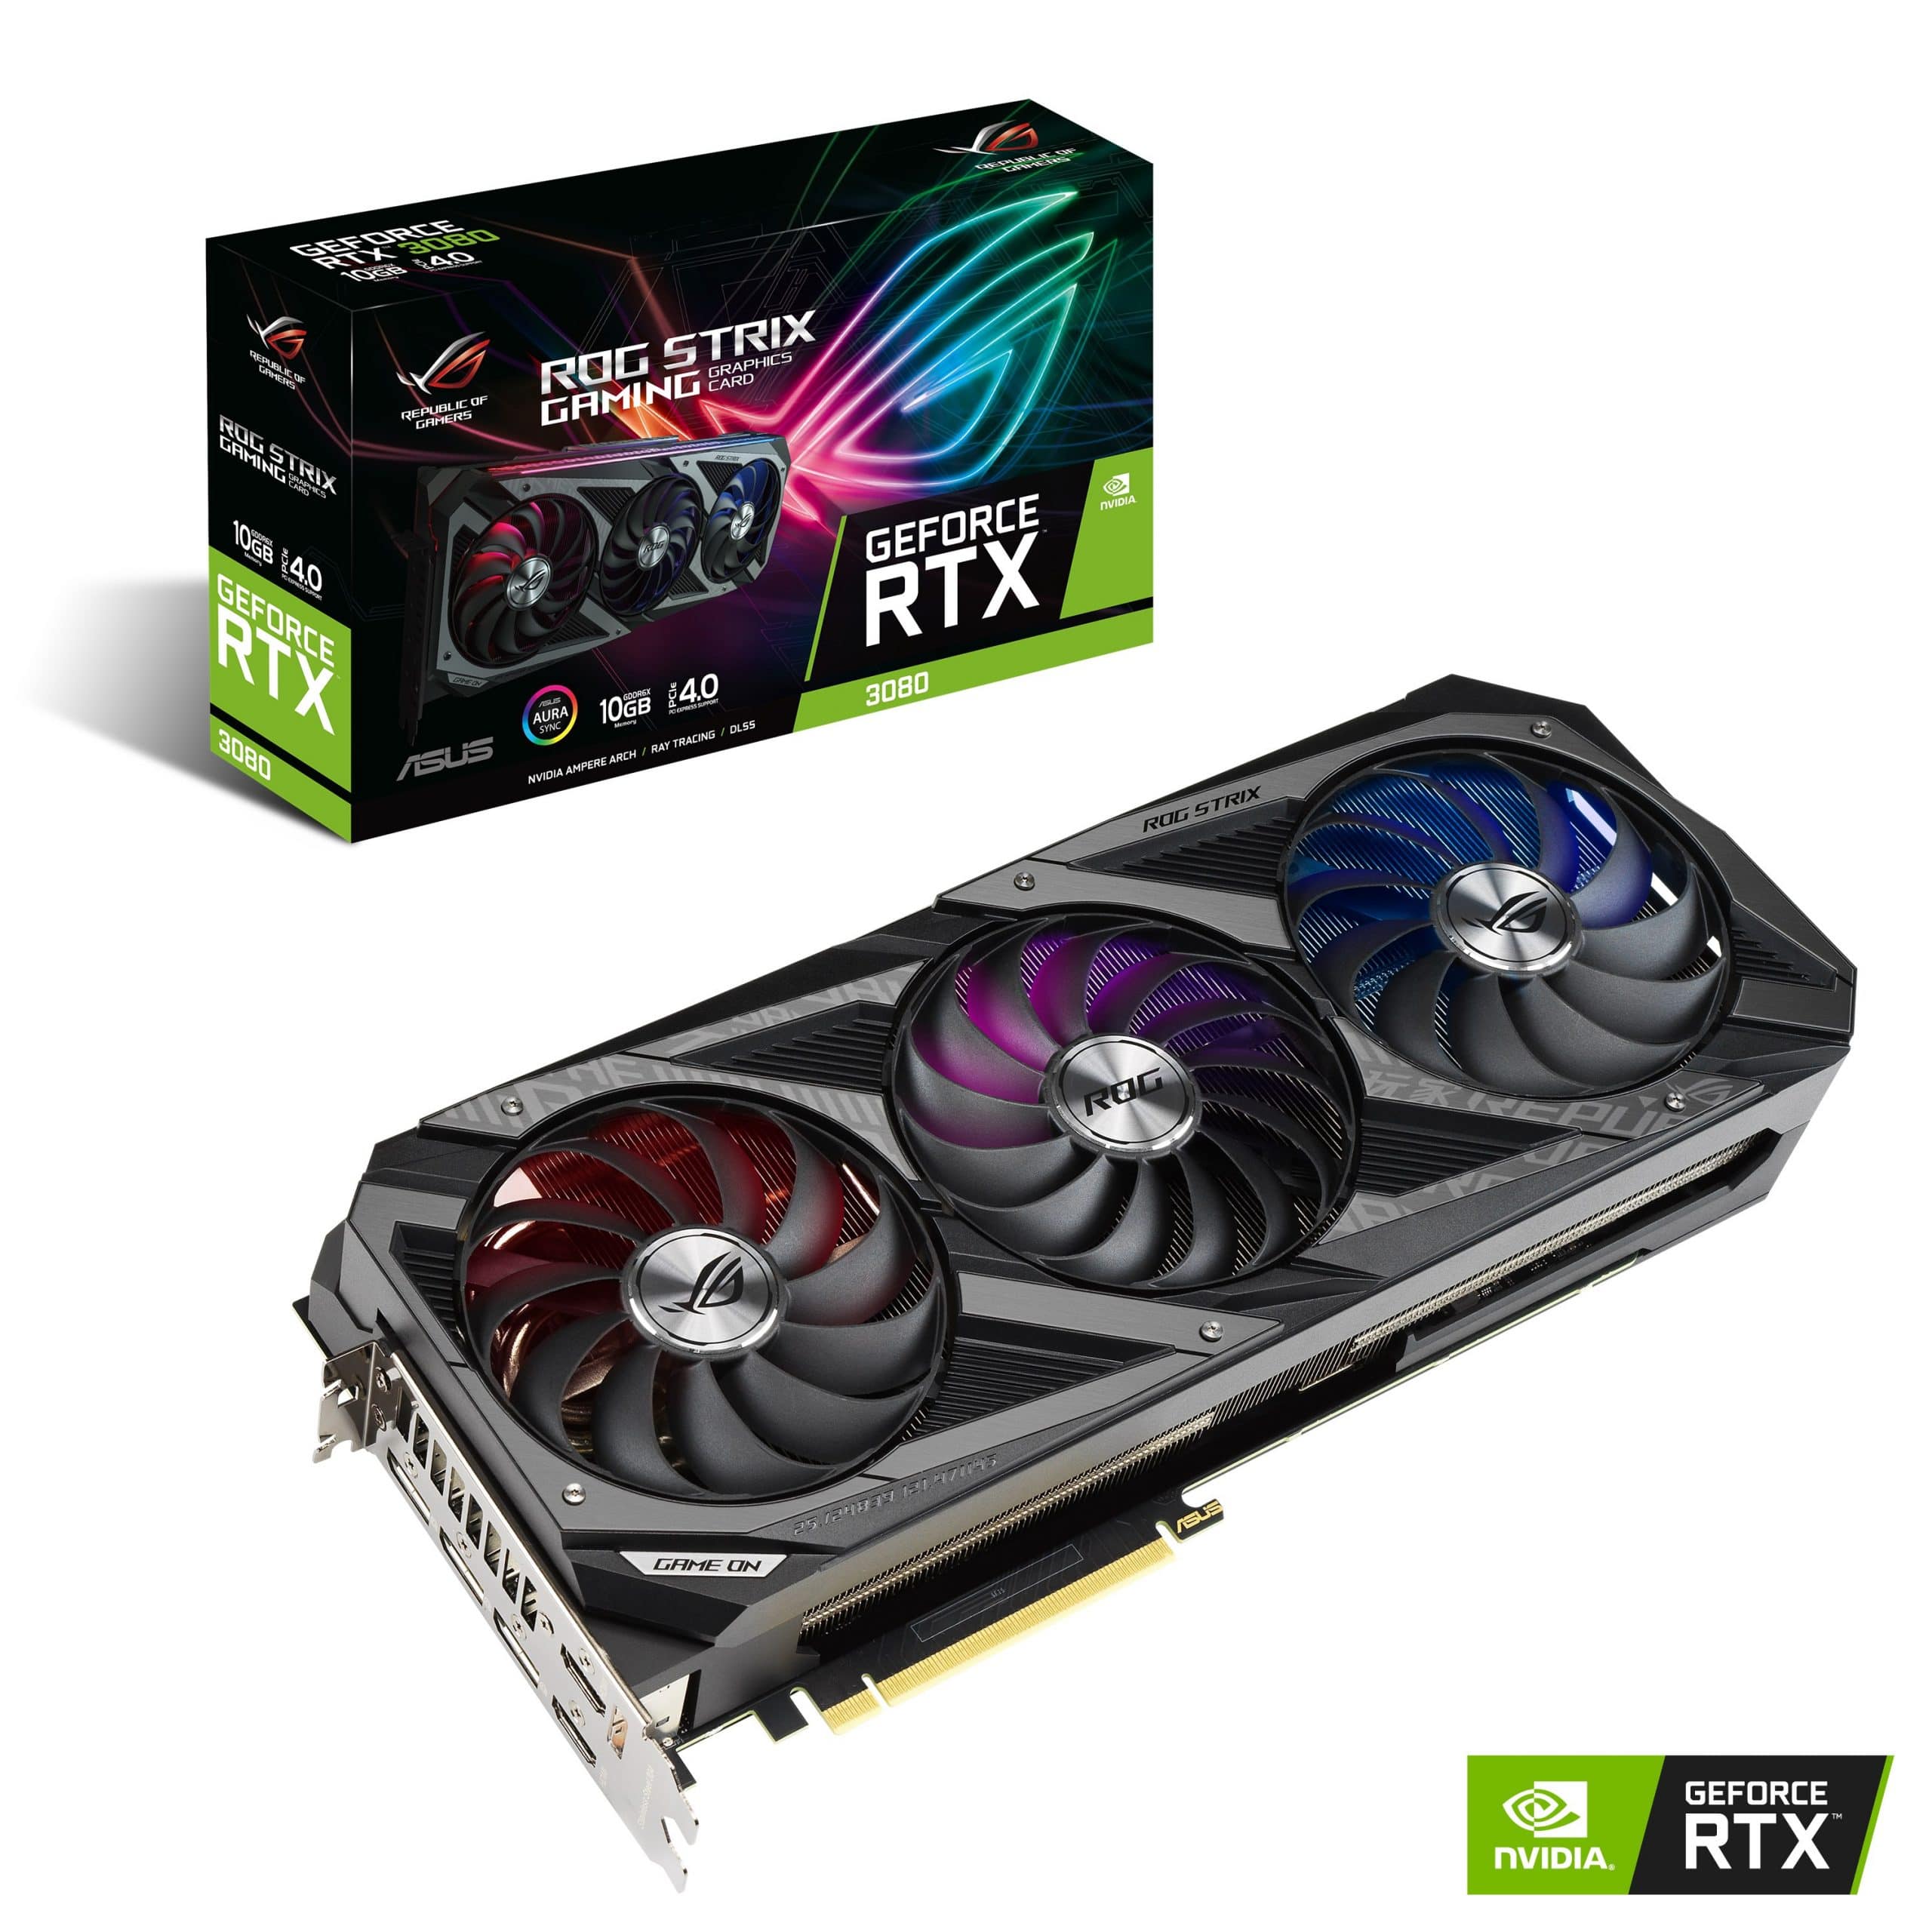 ASUS ra mắt dòng card đồ hoạ ROG Strix, TUF Gaming và Dual NVIDIA GeForce RTX 30 Series